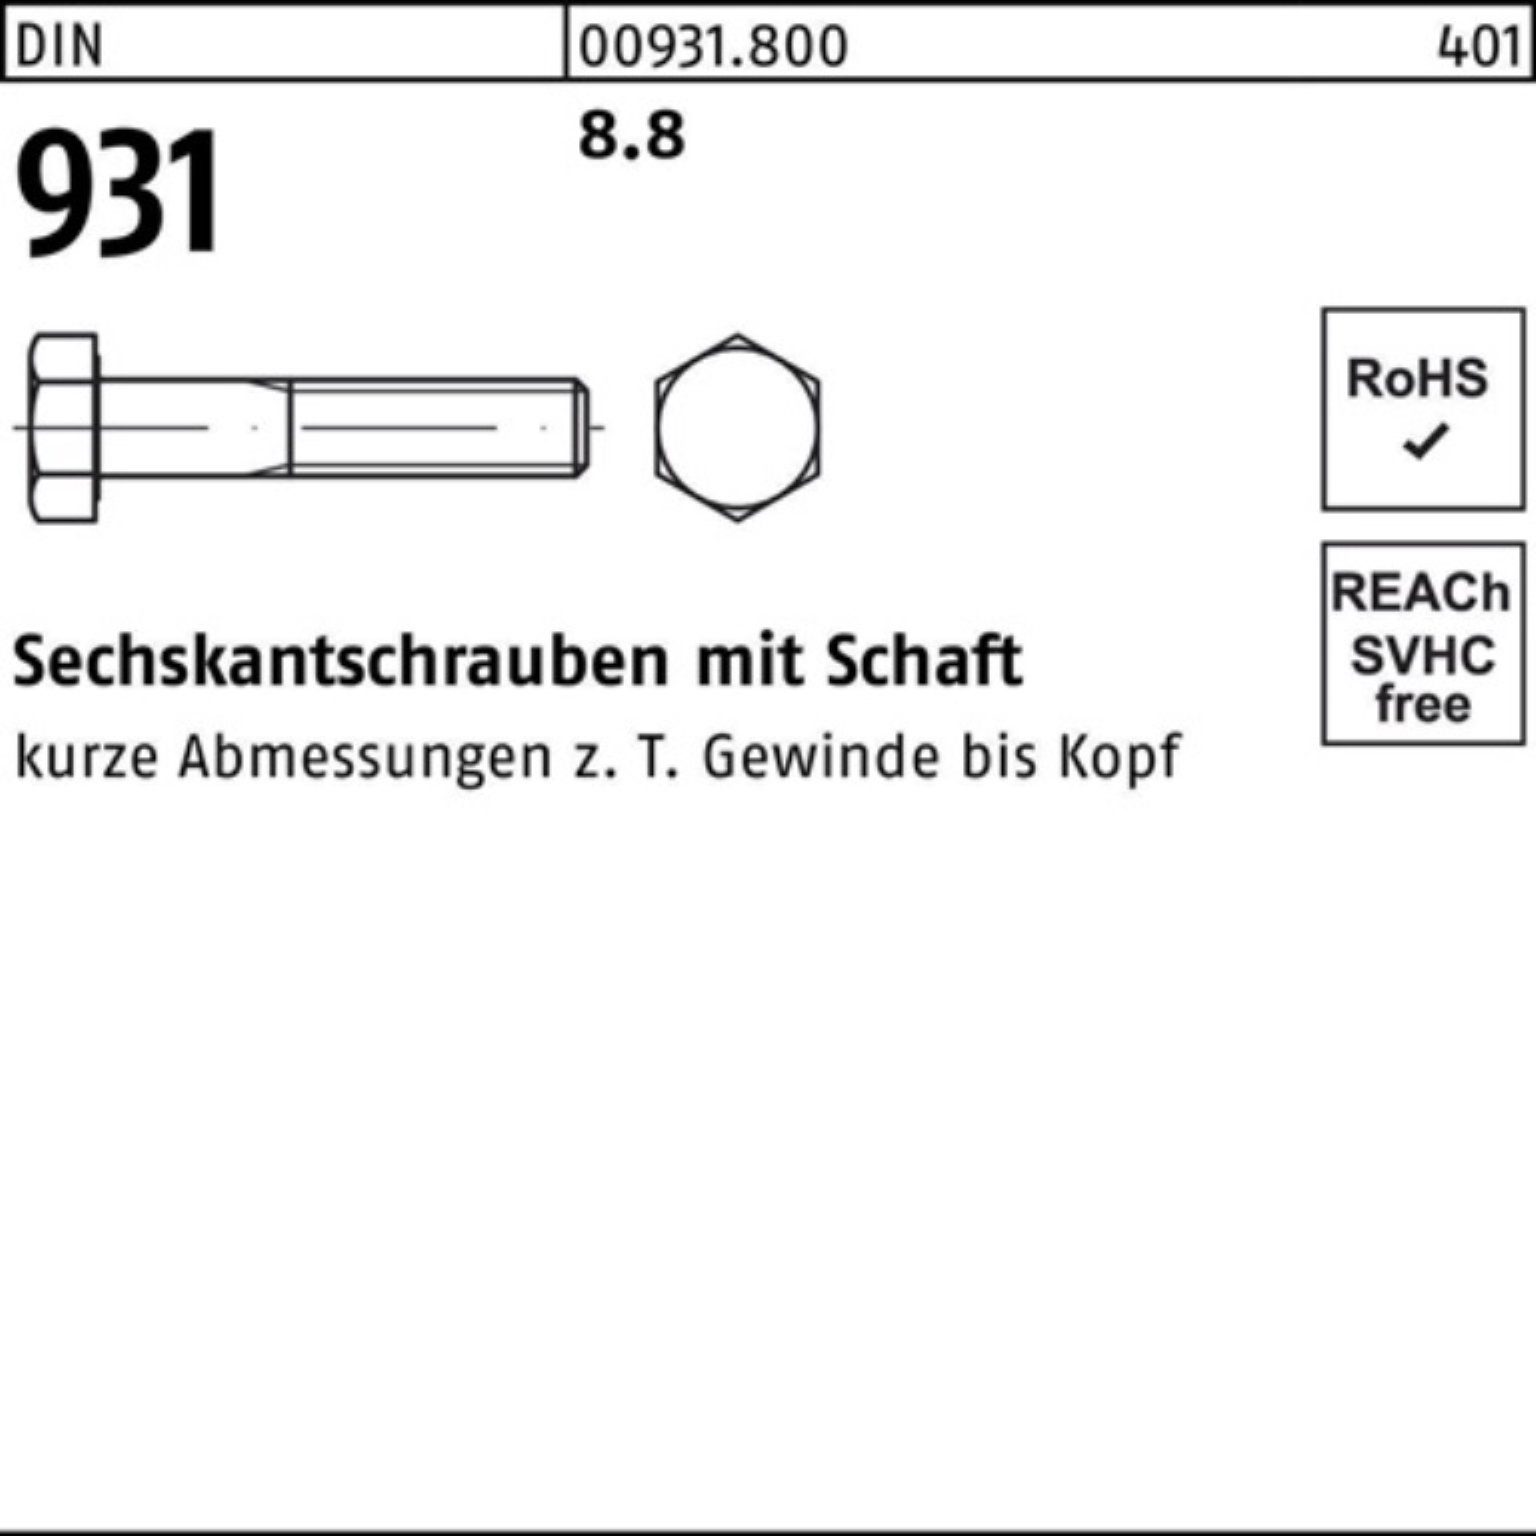 Reyher Sechskantschraube 200er 931 200 Stück 8.8 Schaft DIN Pack 35 Sechskantschraube DIN M8x